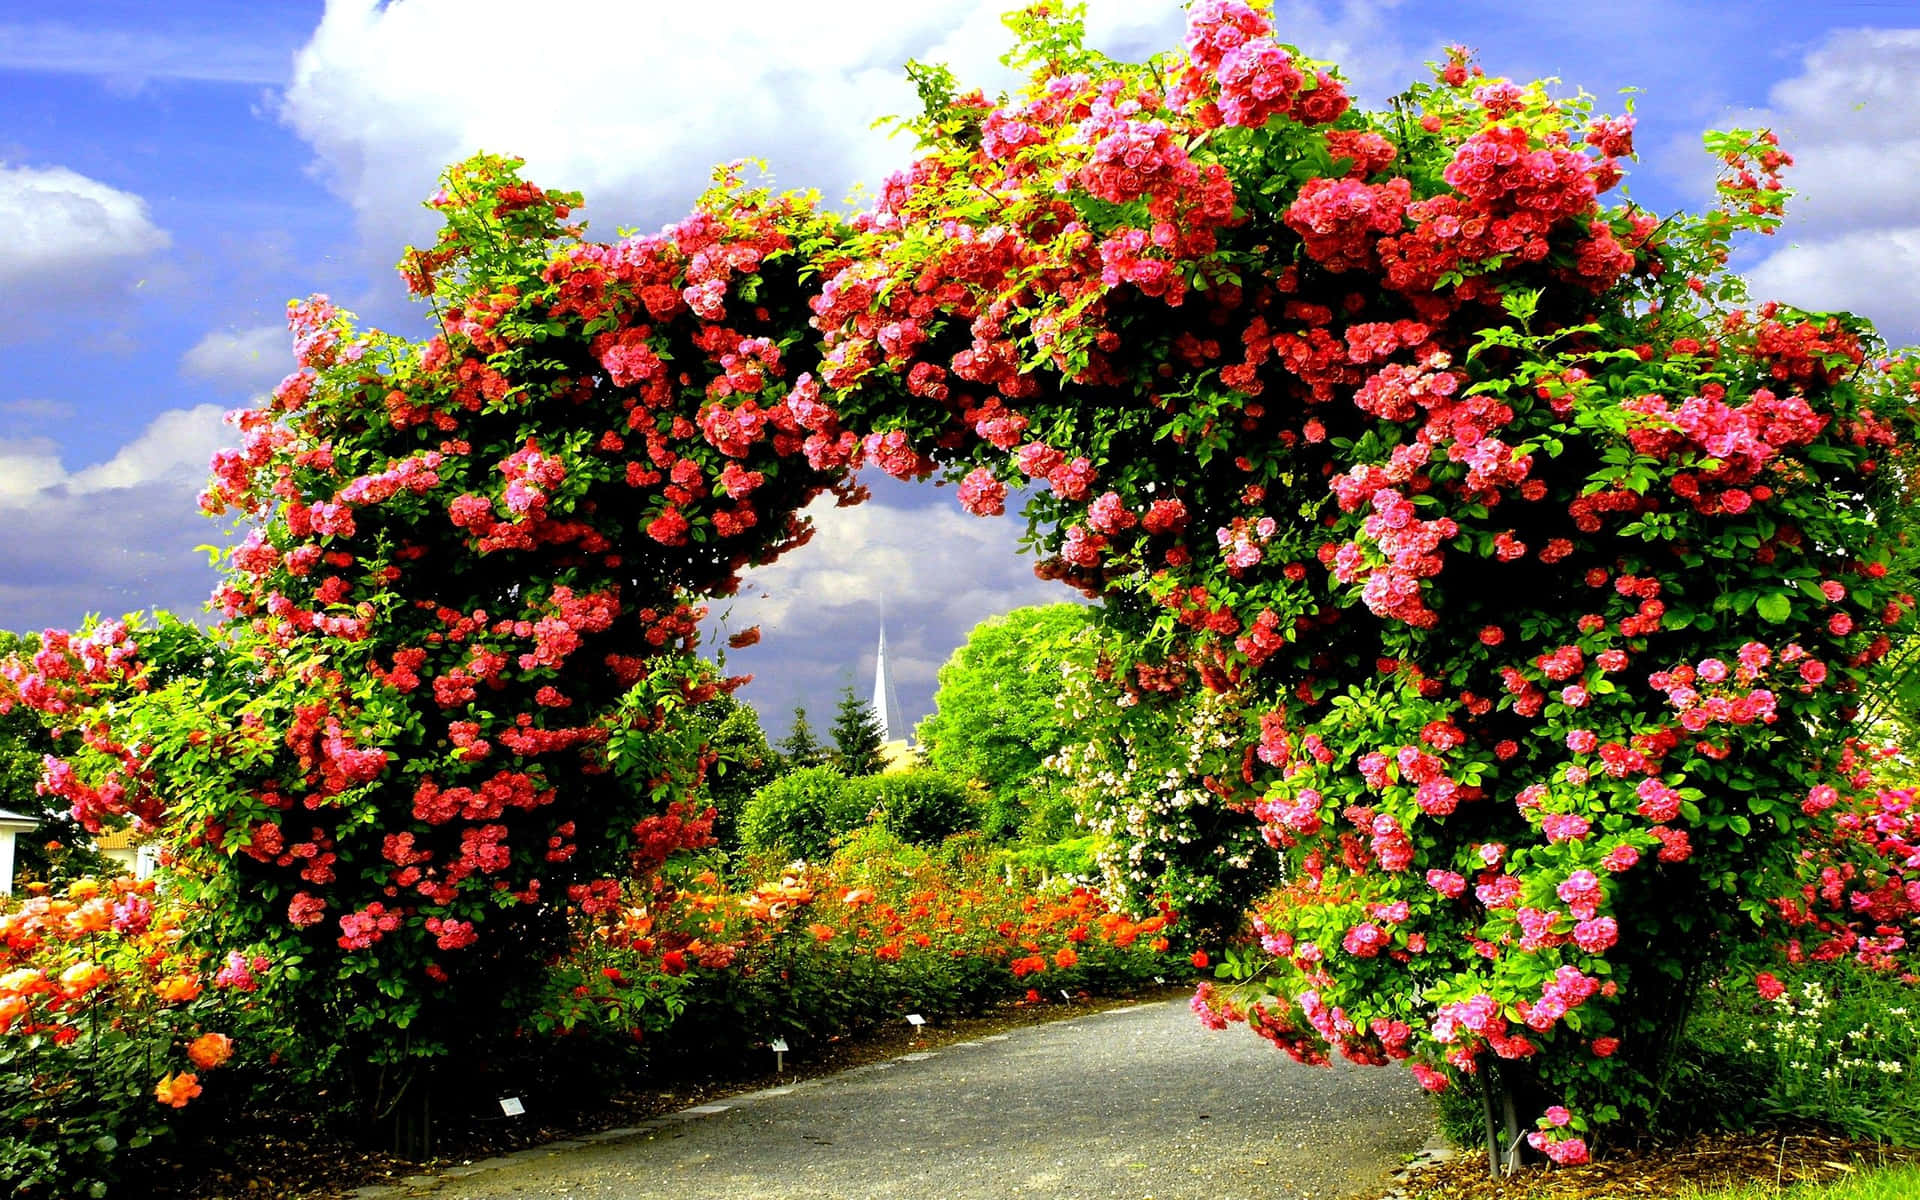 Rosasdel Jardín En Color Rosa En Una Hermosa Imagen Del Arco Del Jardín.